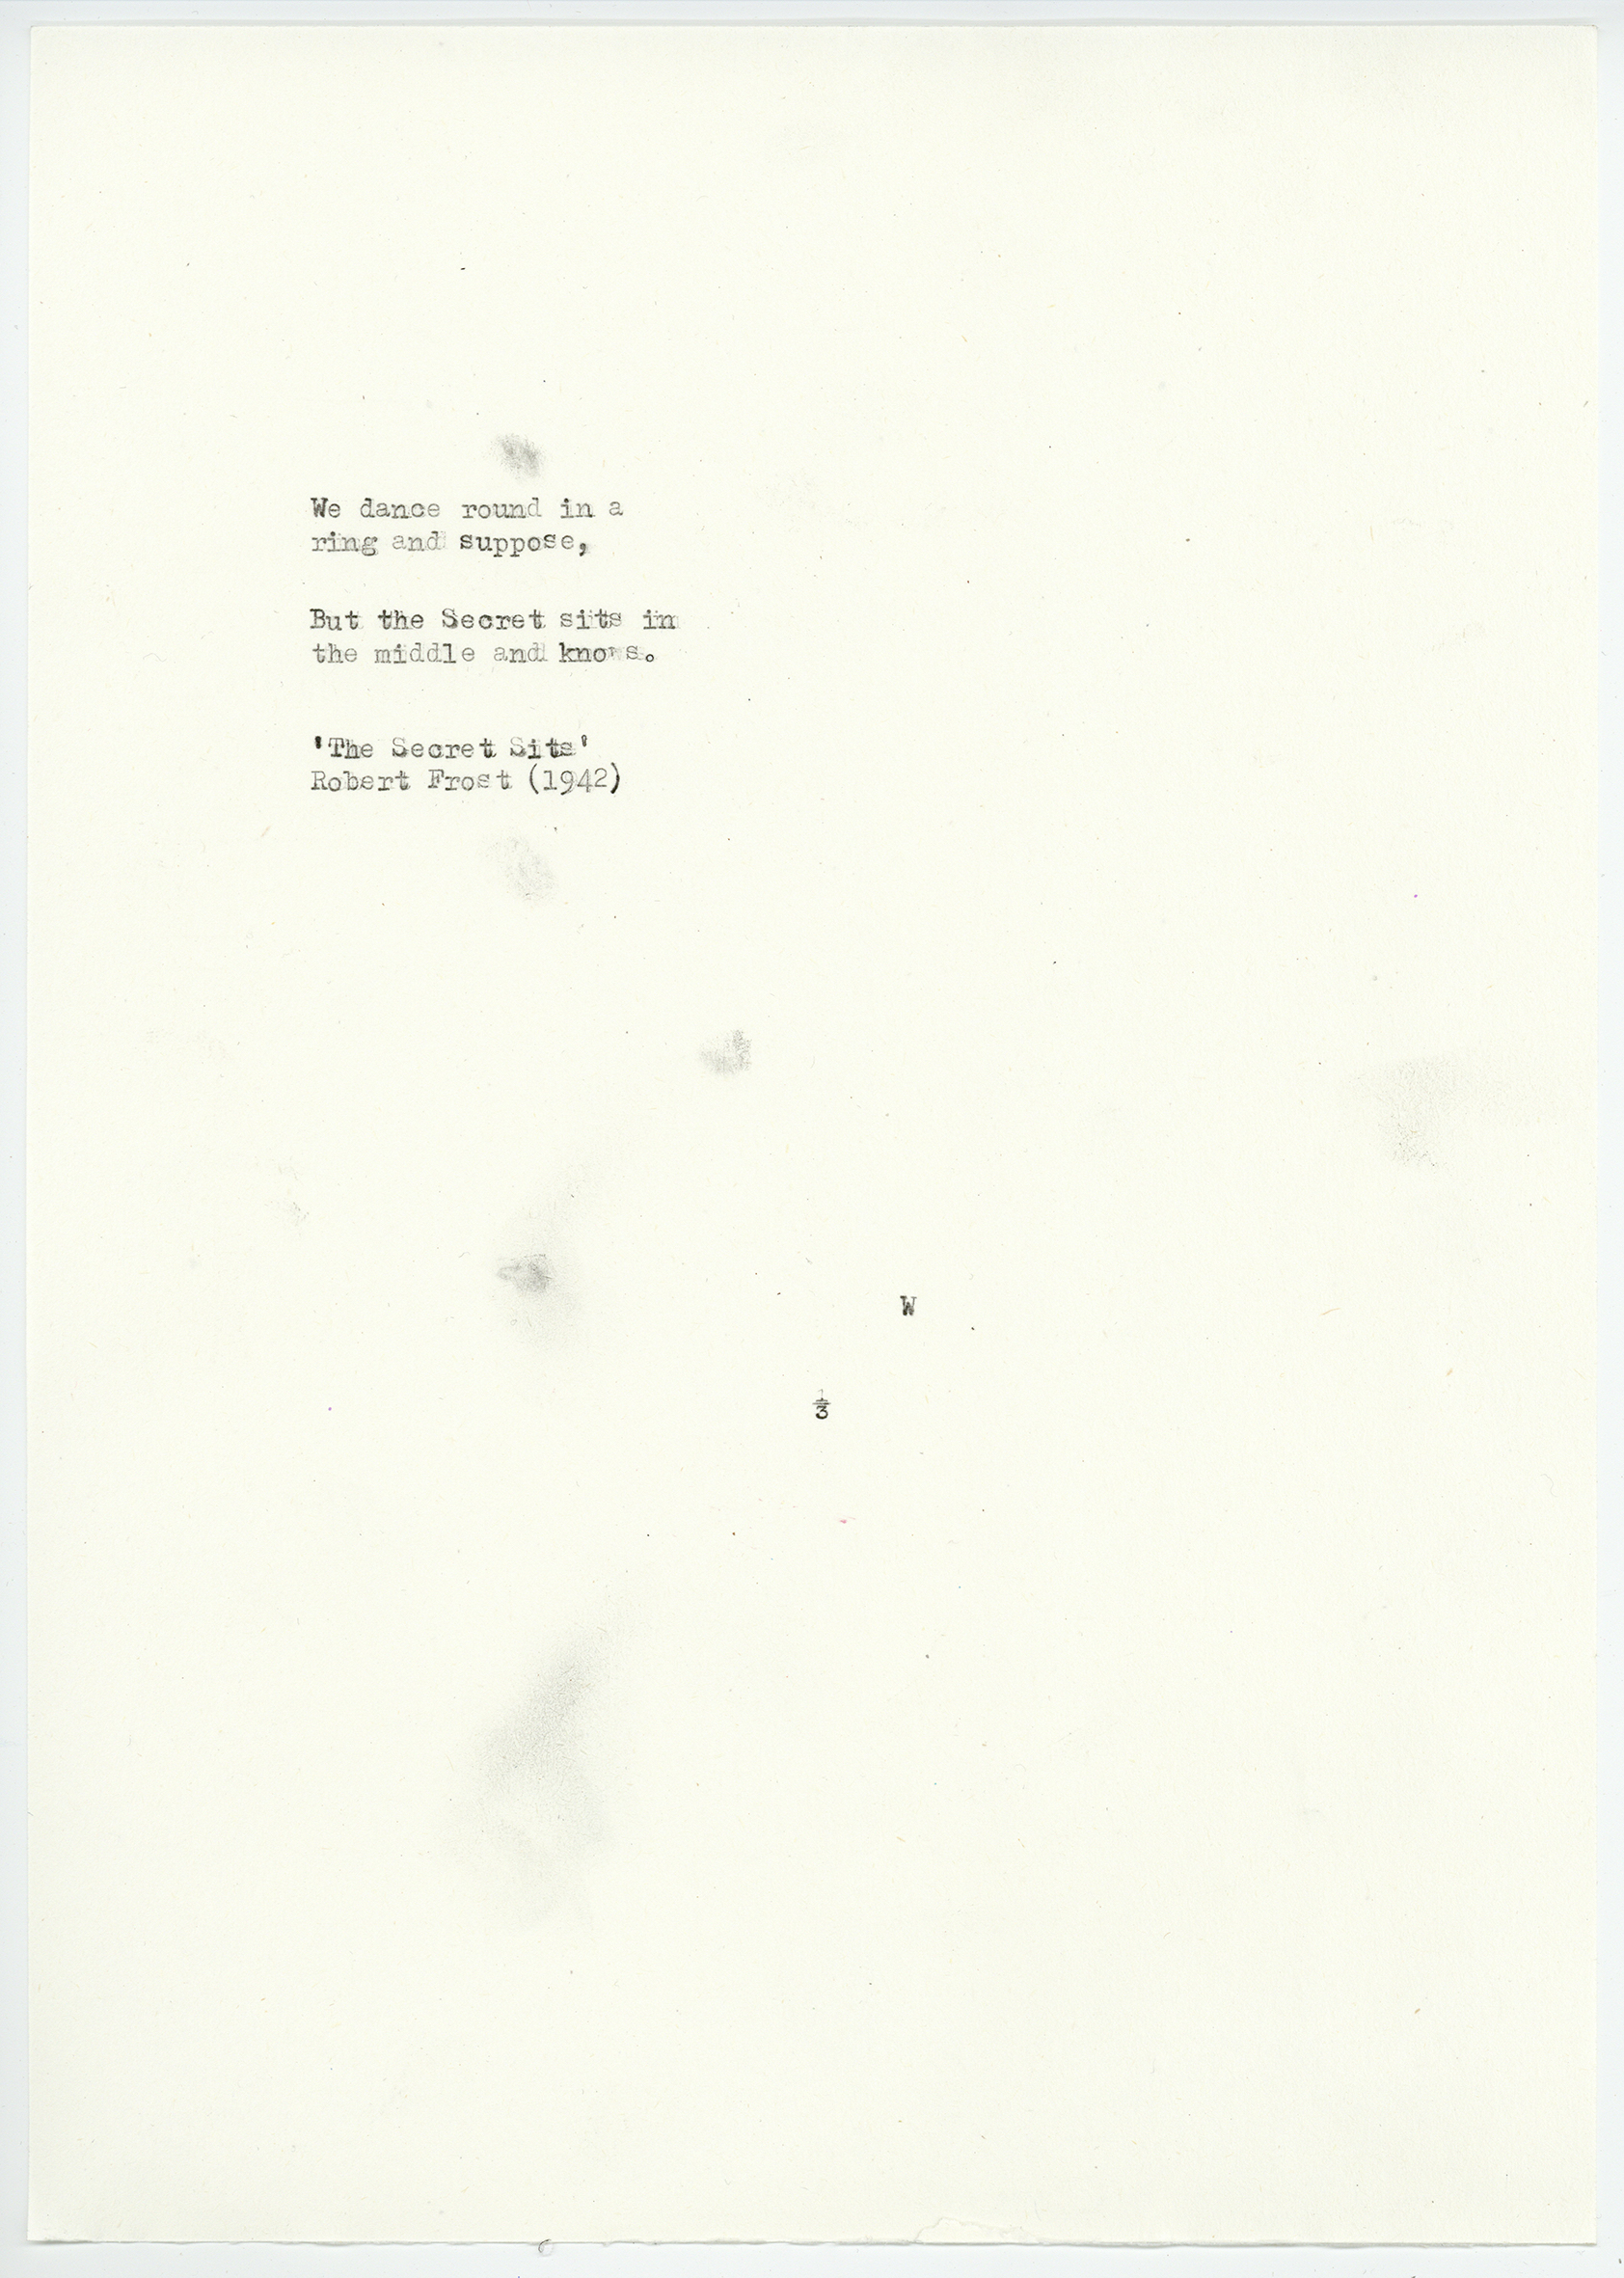 Robert Frost - Poem